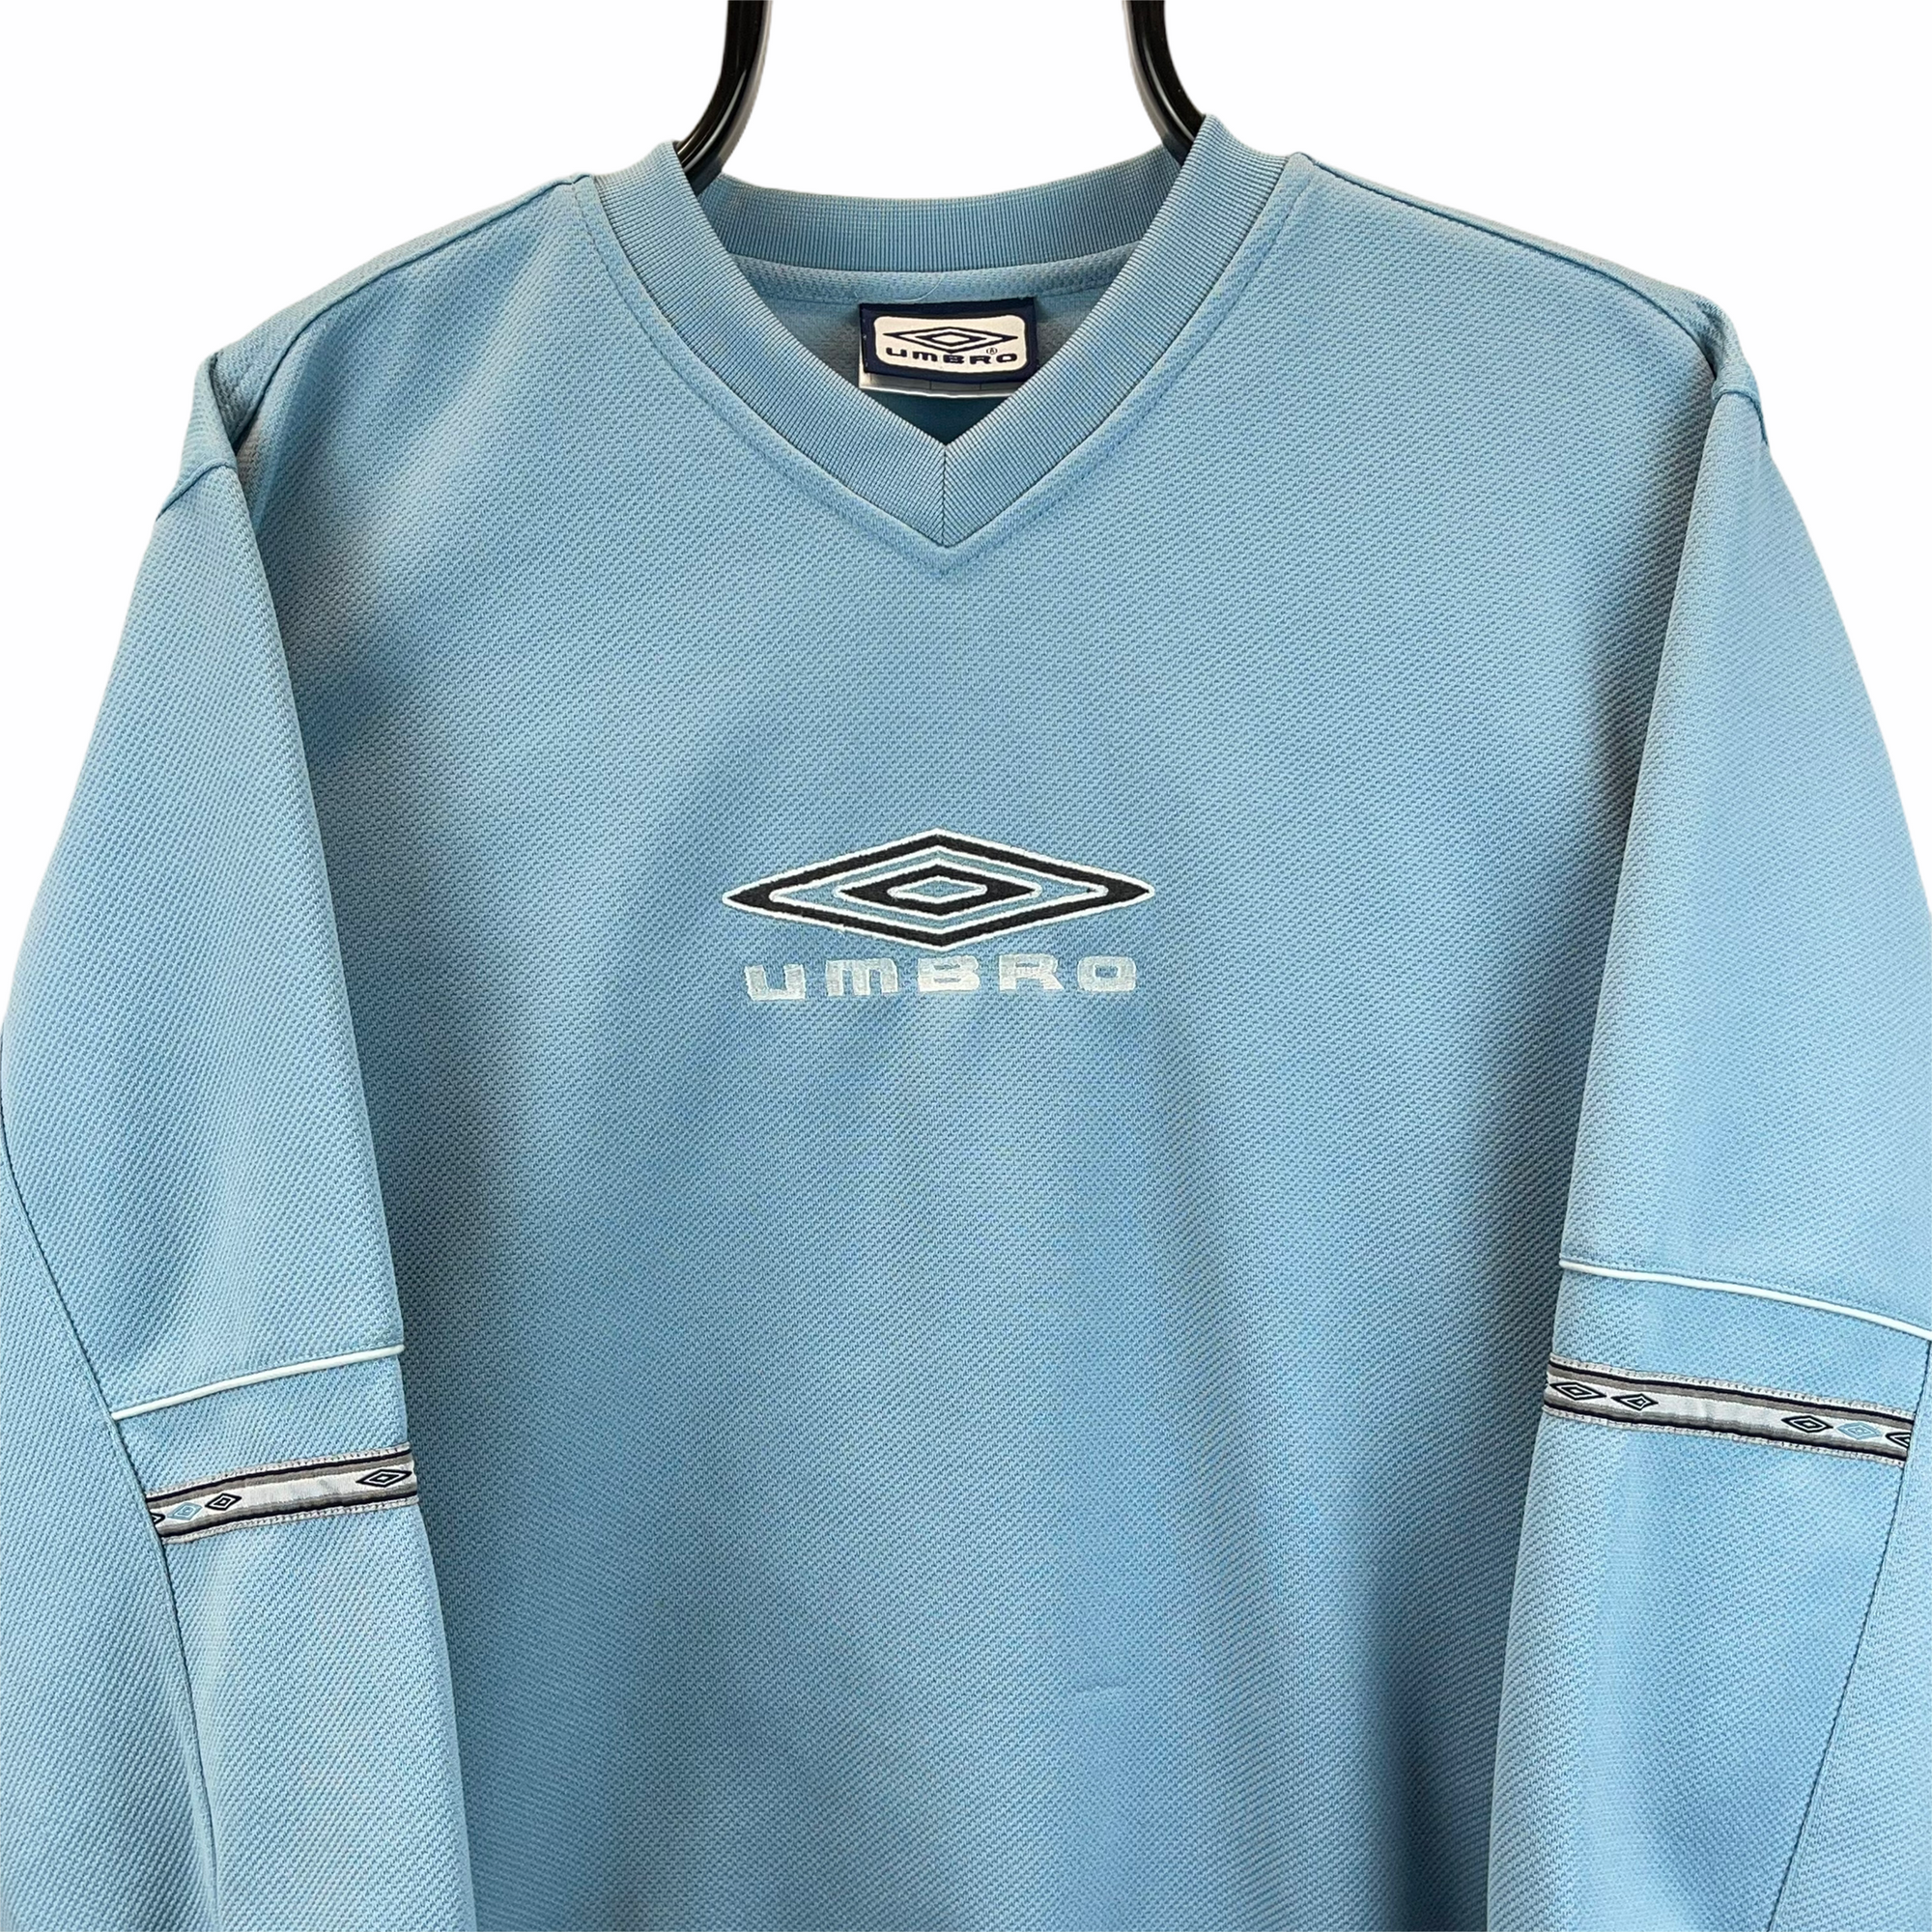 Vintage Umbro Spellout Sweatshirt in Baby Blue - Men's Small/Women's Medium